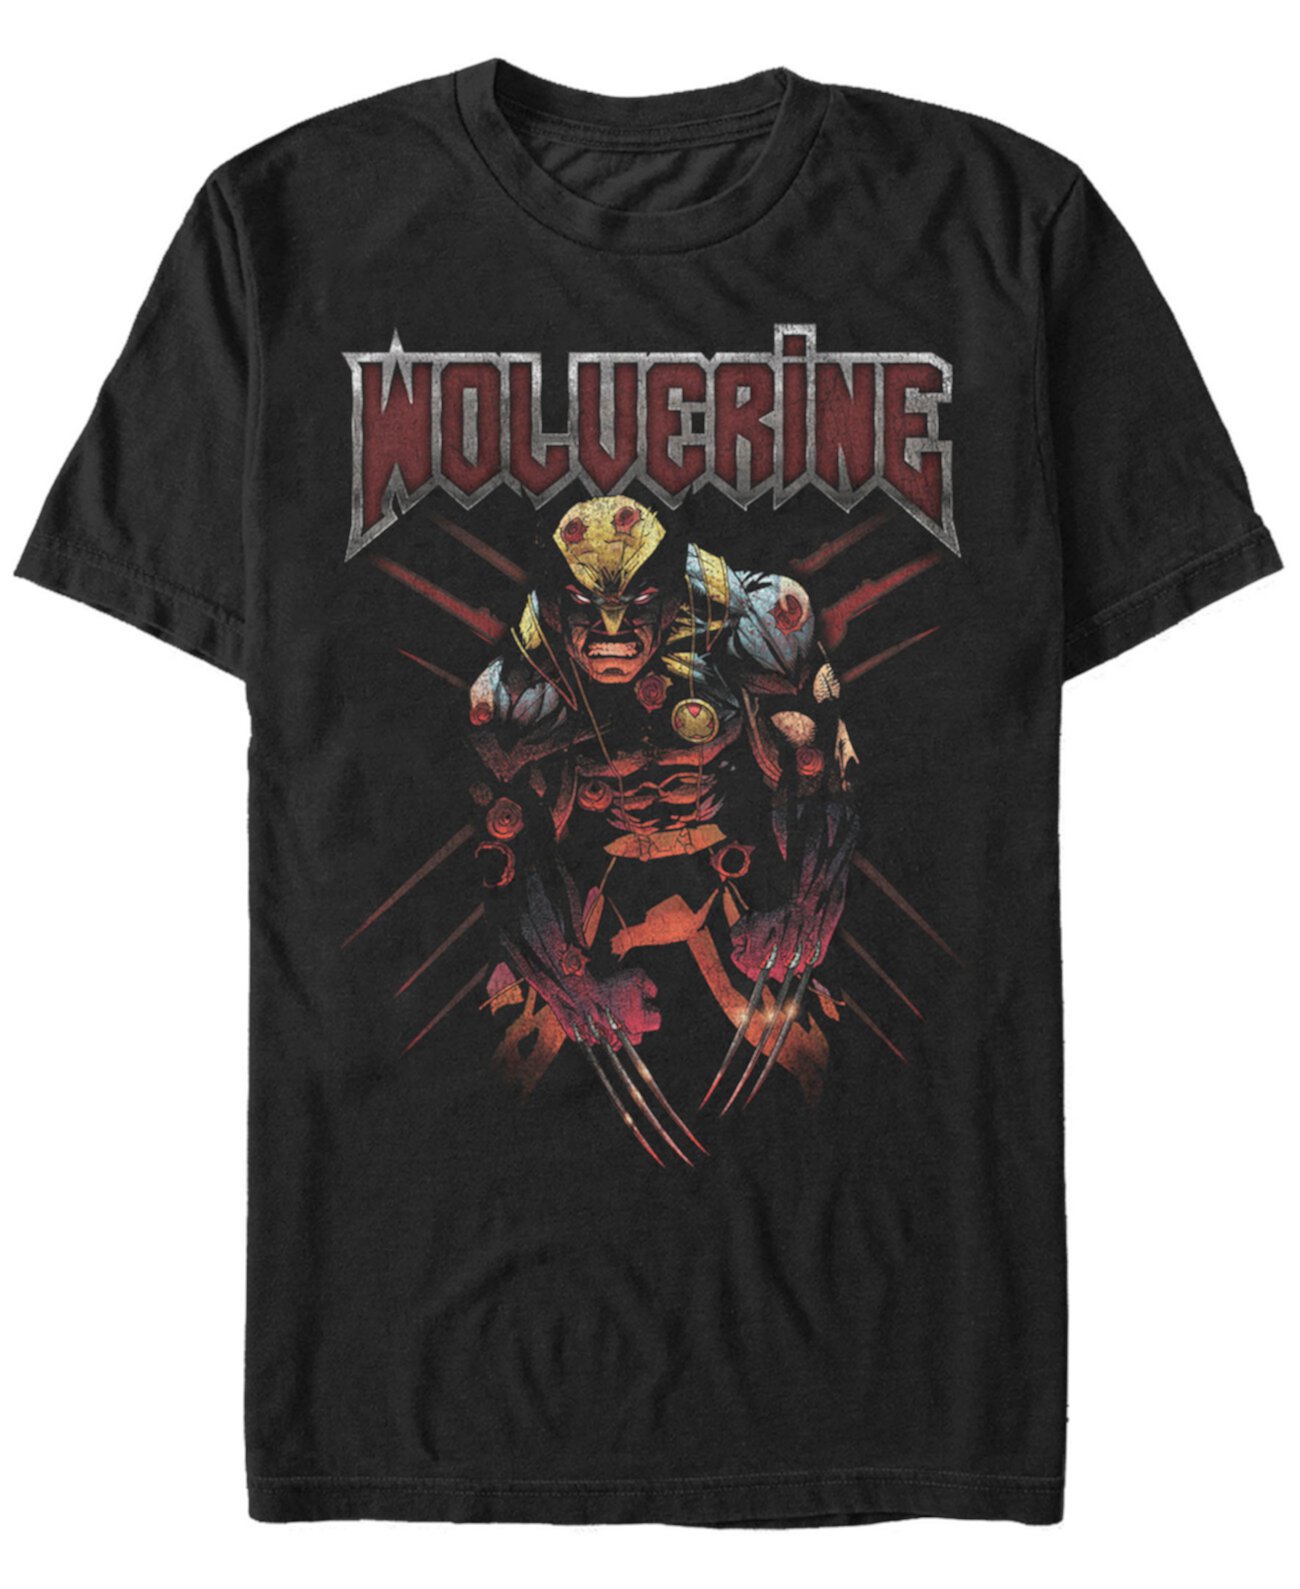 Мужская классическая футболка X-Men Angry Wolverine с коротким рукавом FIFTH SUN